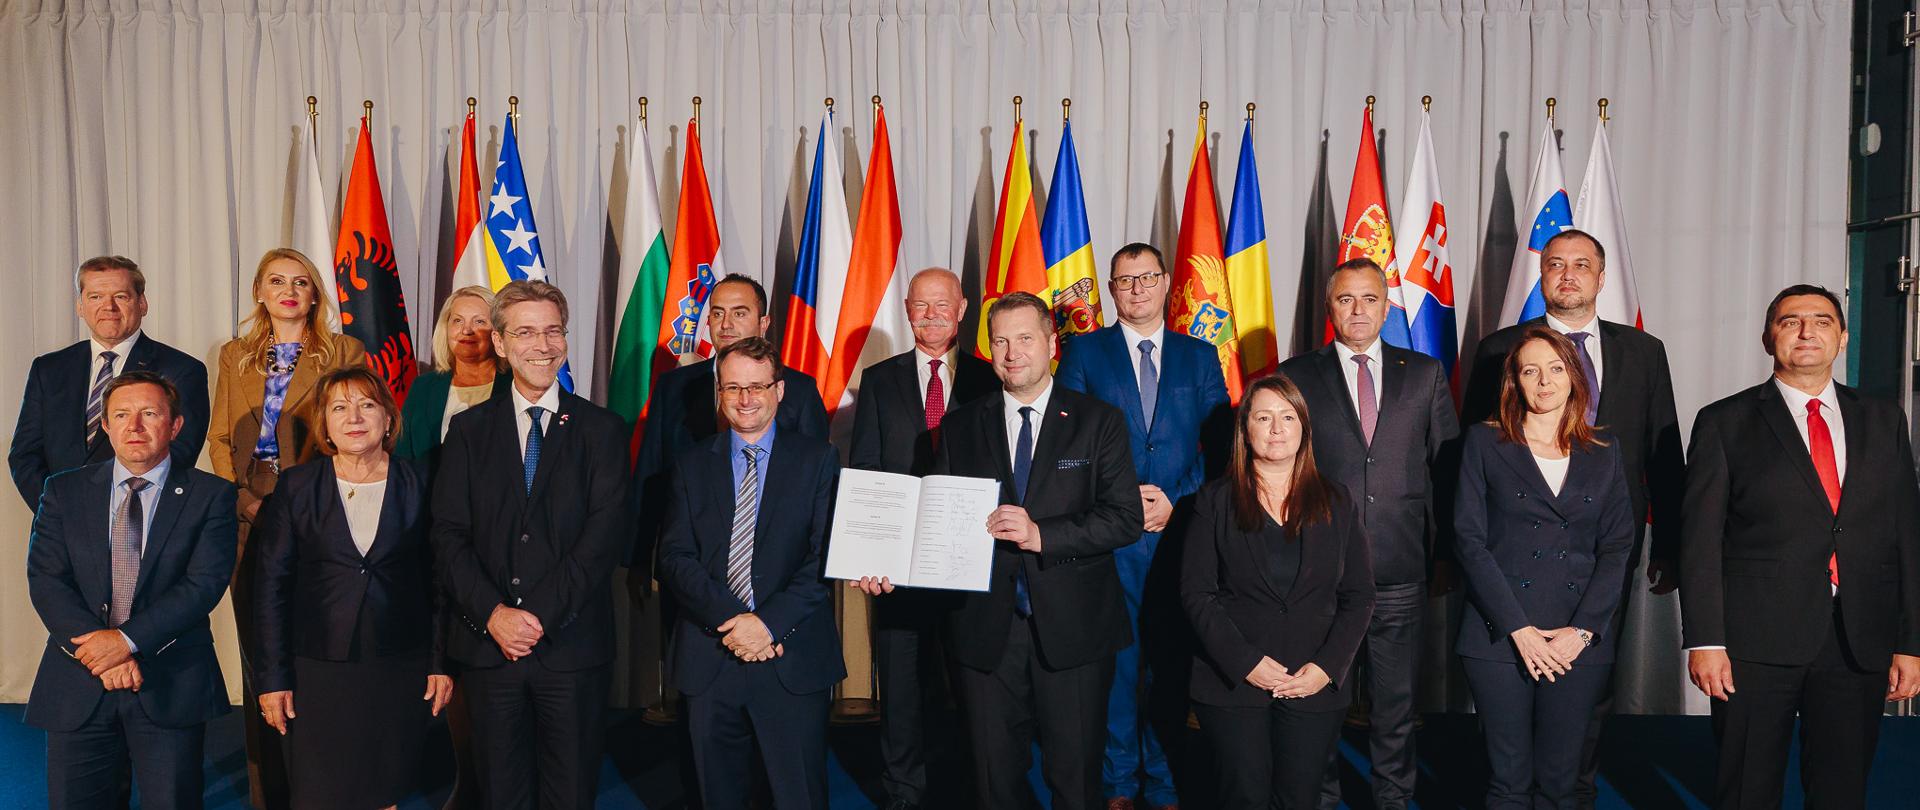 W dużej sali przed rzędem kolorowych flag stoi duża grupa elegancko ubranych osób, z przodu minister Czarnek trzyma w rękach otwarty dokument.
